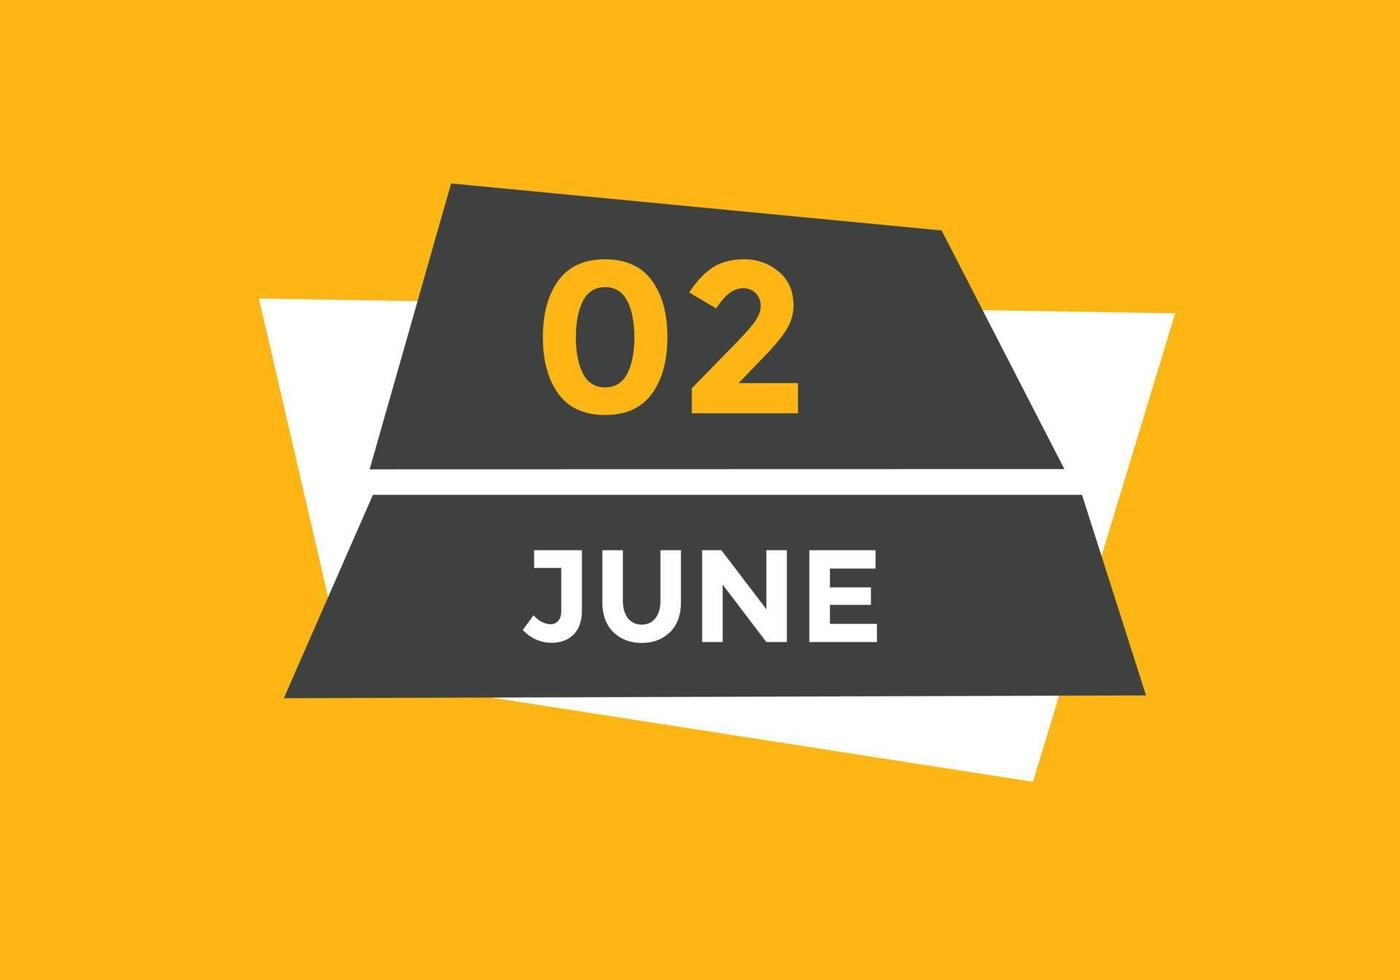 juni 2 kalender påminnelse. 2:a juni dagligen kalender ikon mall. kalender 2:a juni ikon design mall. vektor illustration